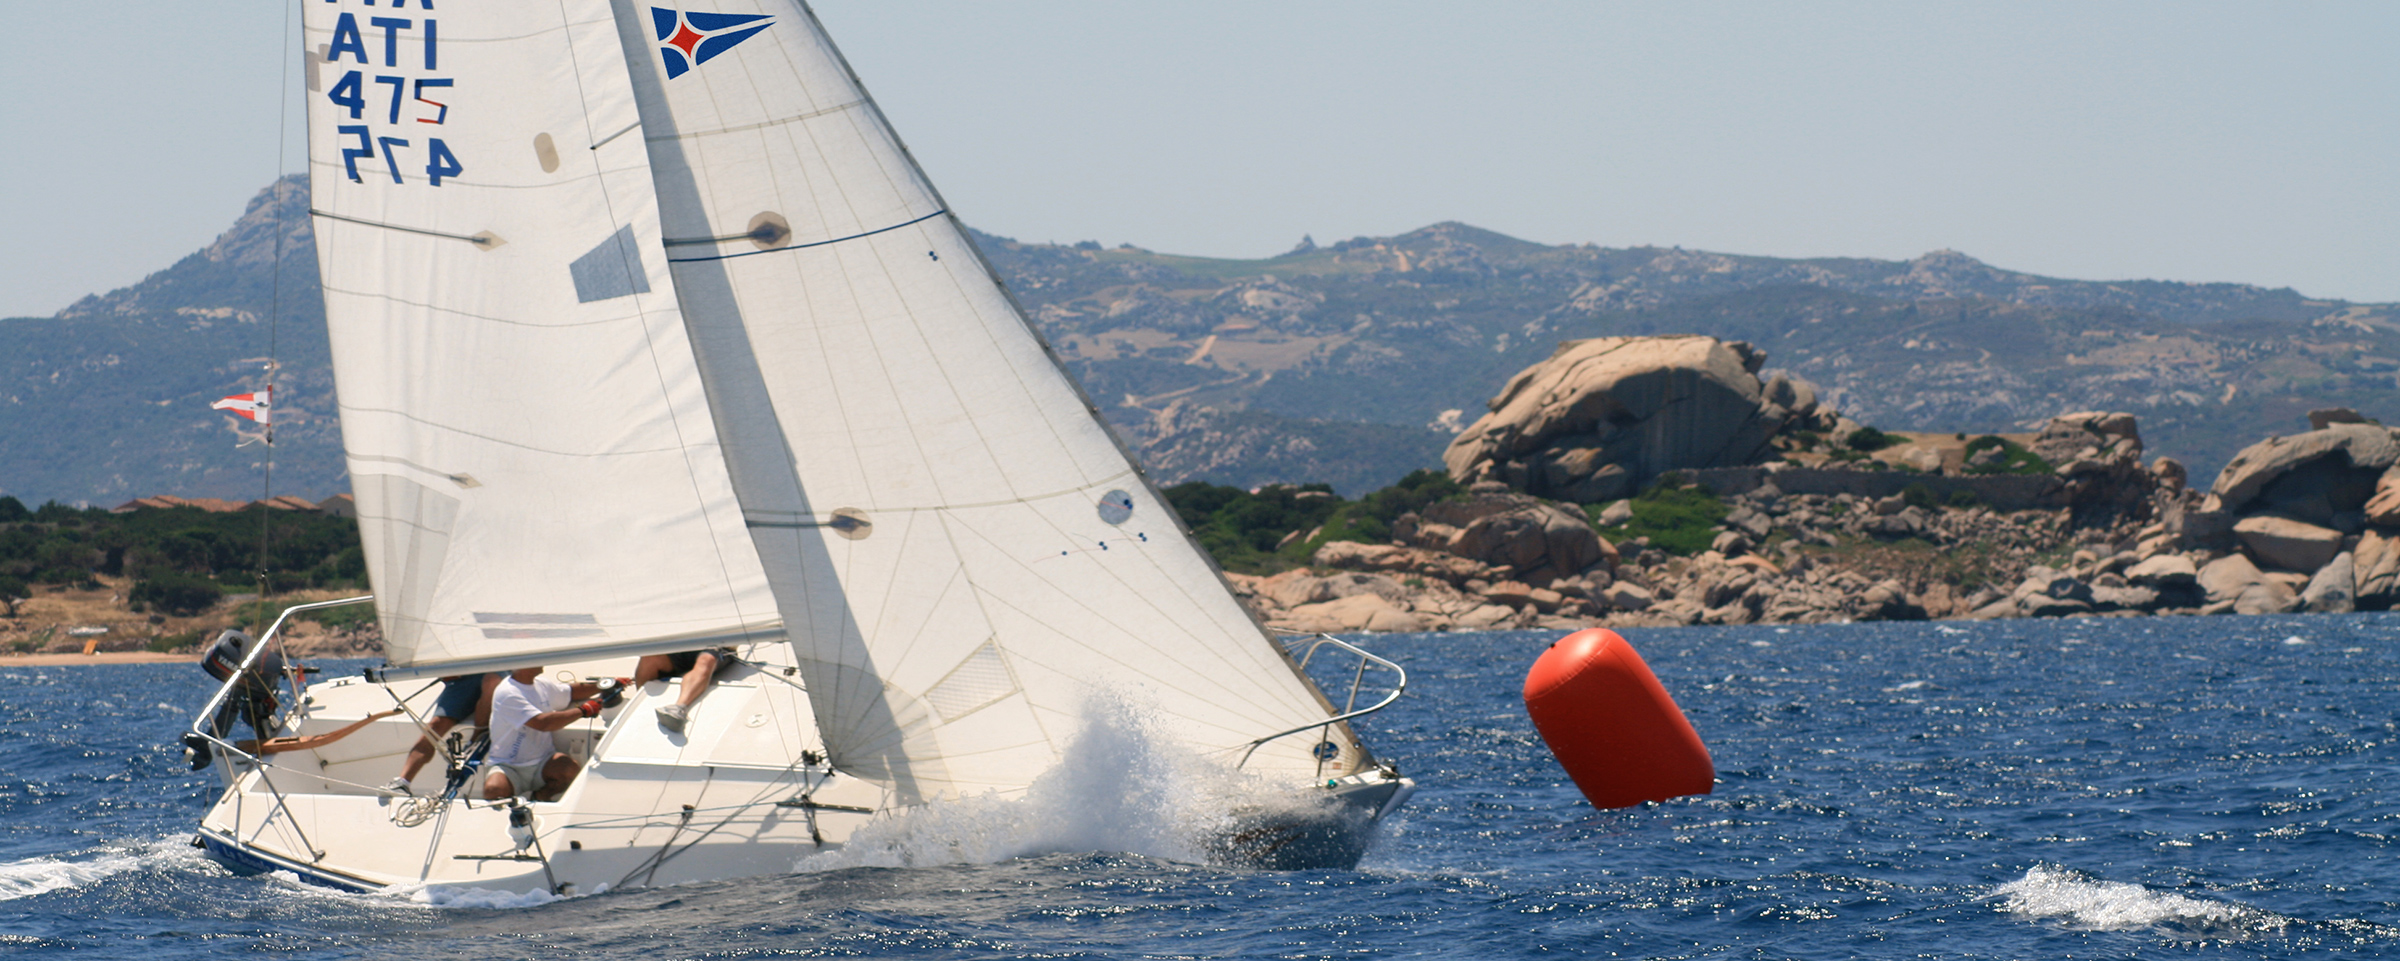 YCCS Sailing School - 1 - Yacht Club Costa Smeralda